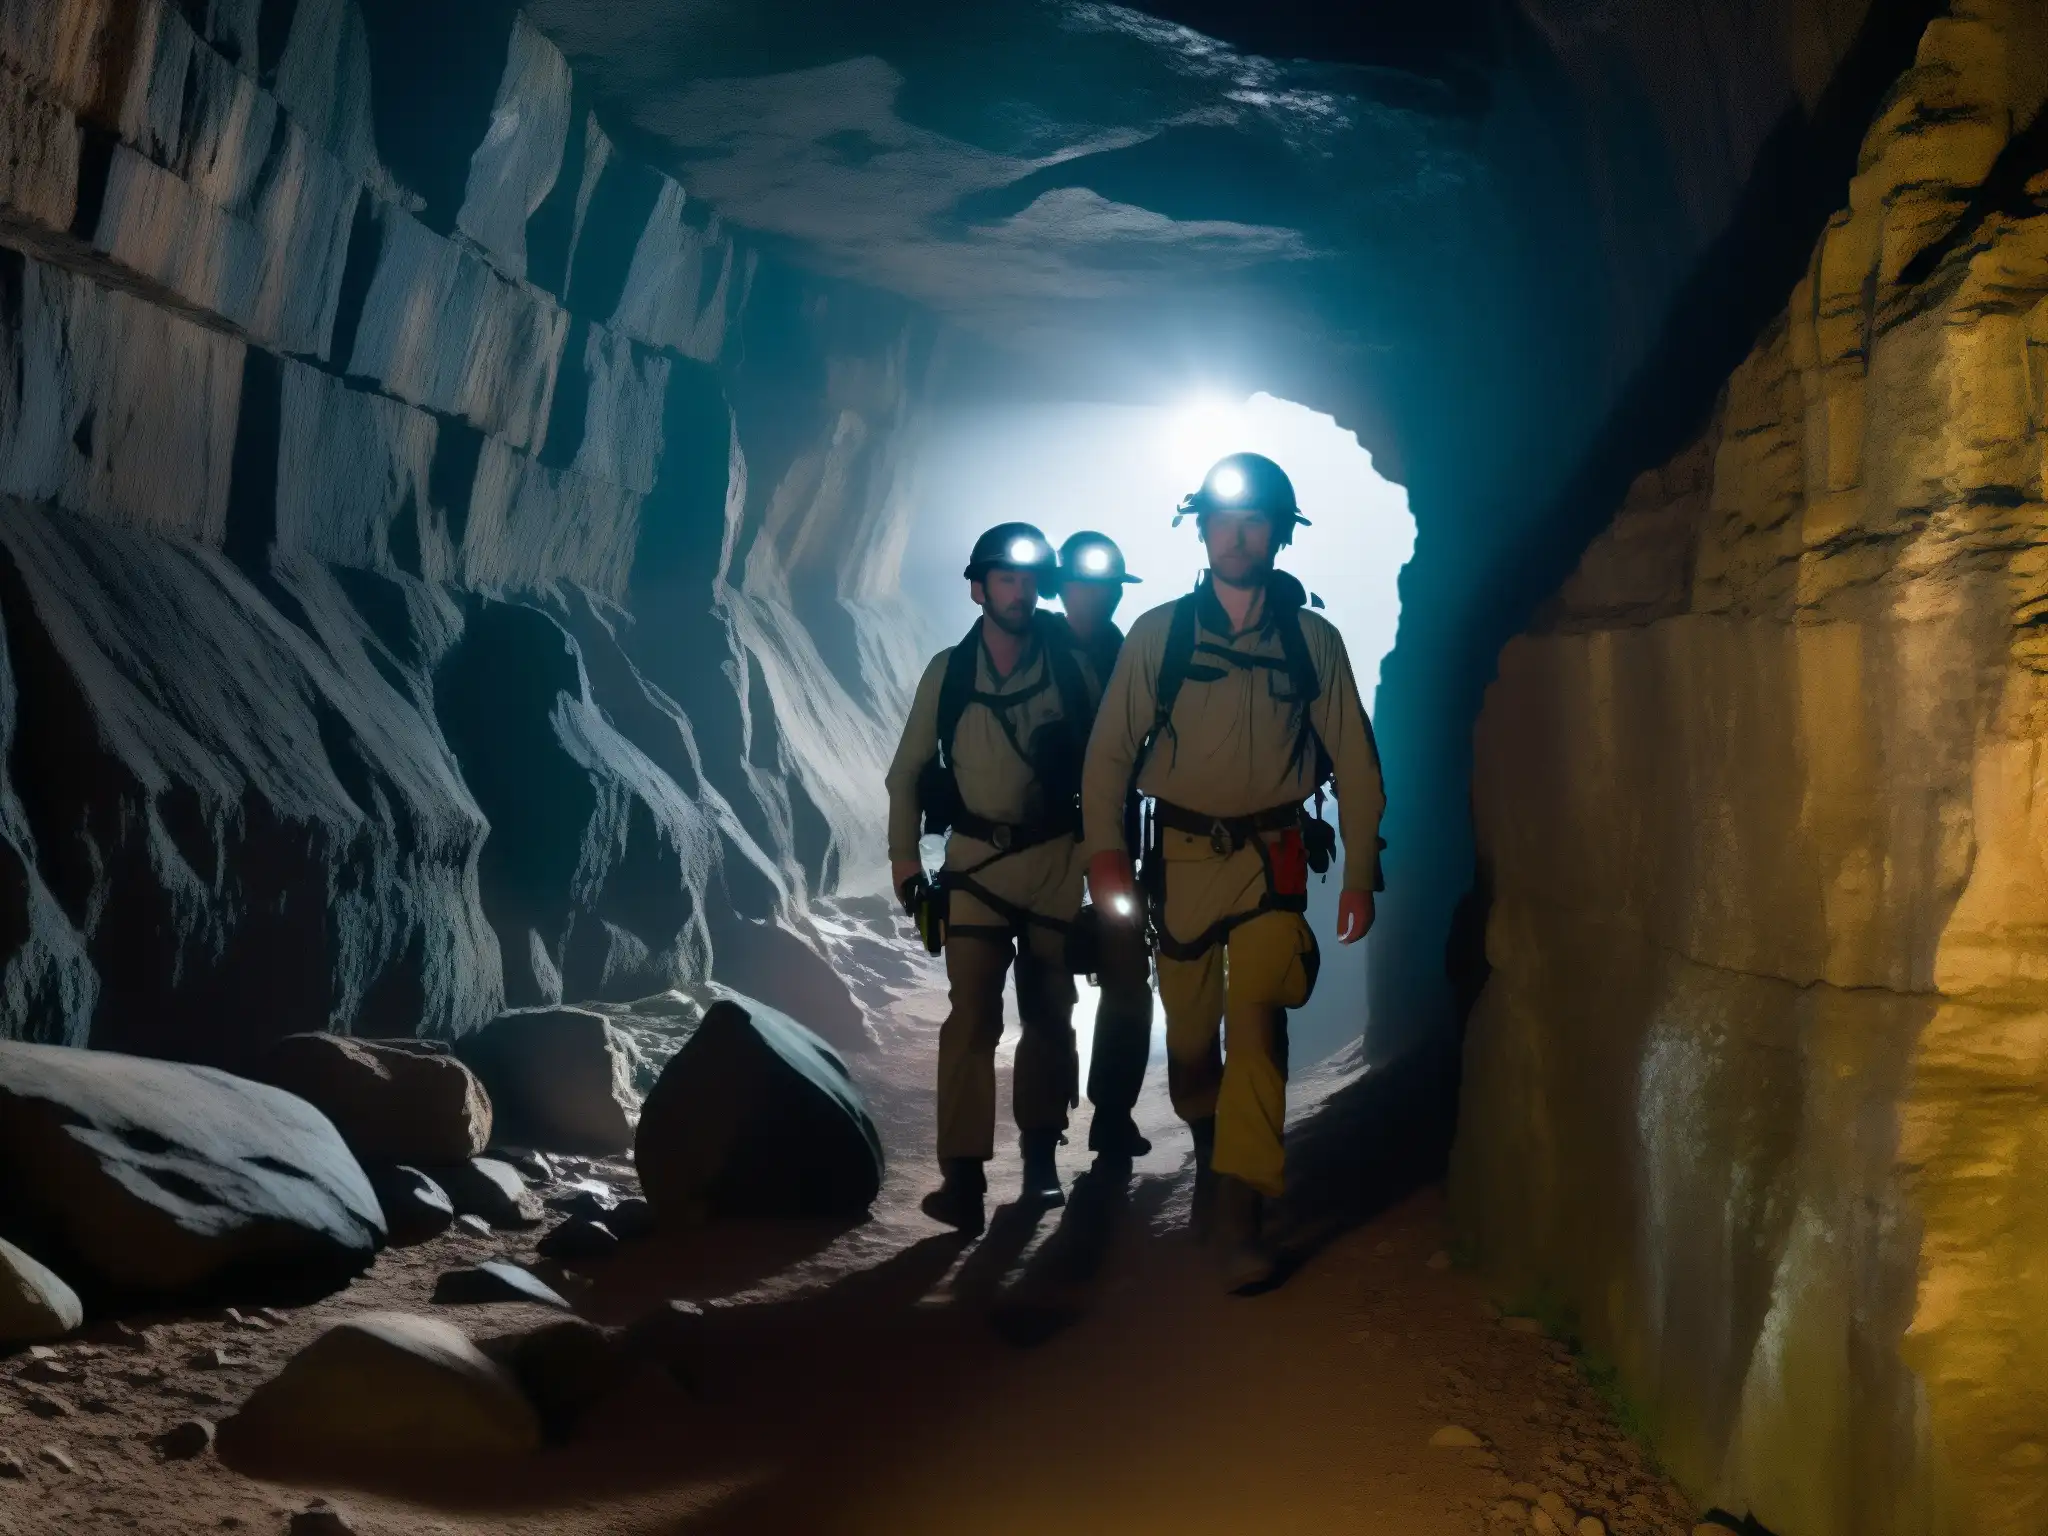 Exploradores con linternas en túnel subterráneo oscuro, transmitiendo inquietud